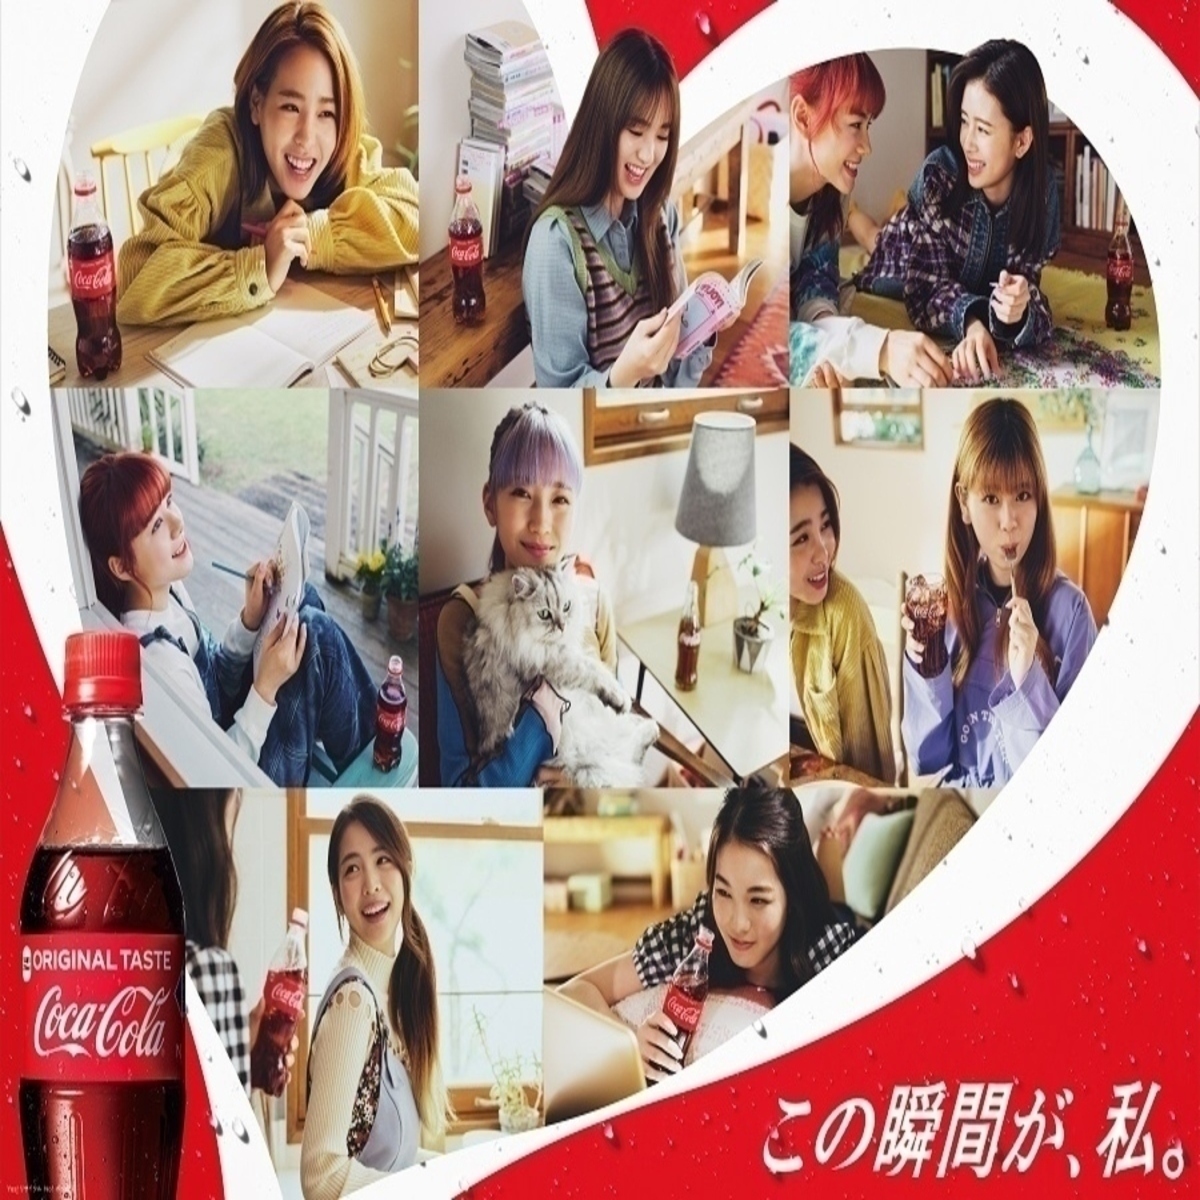 Niziu コカ コーラ の新cmに登場 21年1月4日 月 から全国放映スタート Kstyle